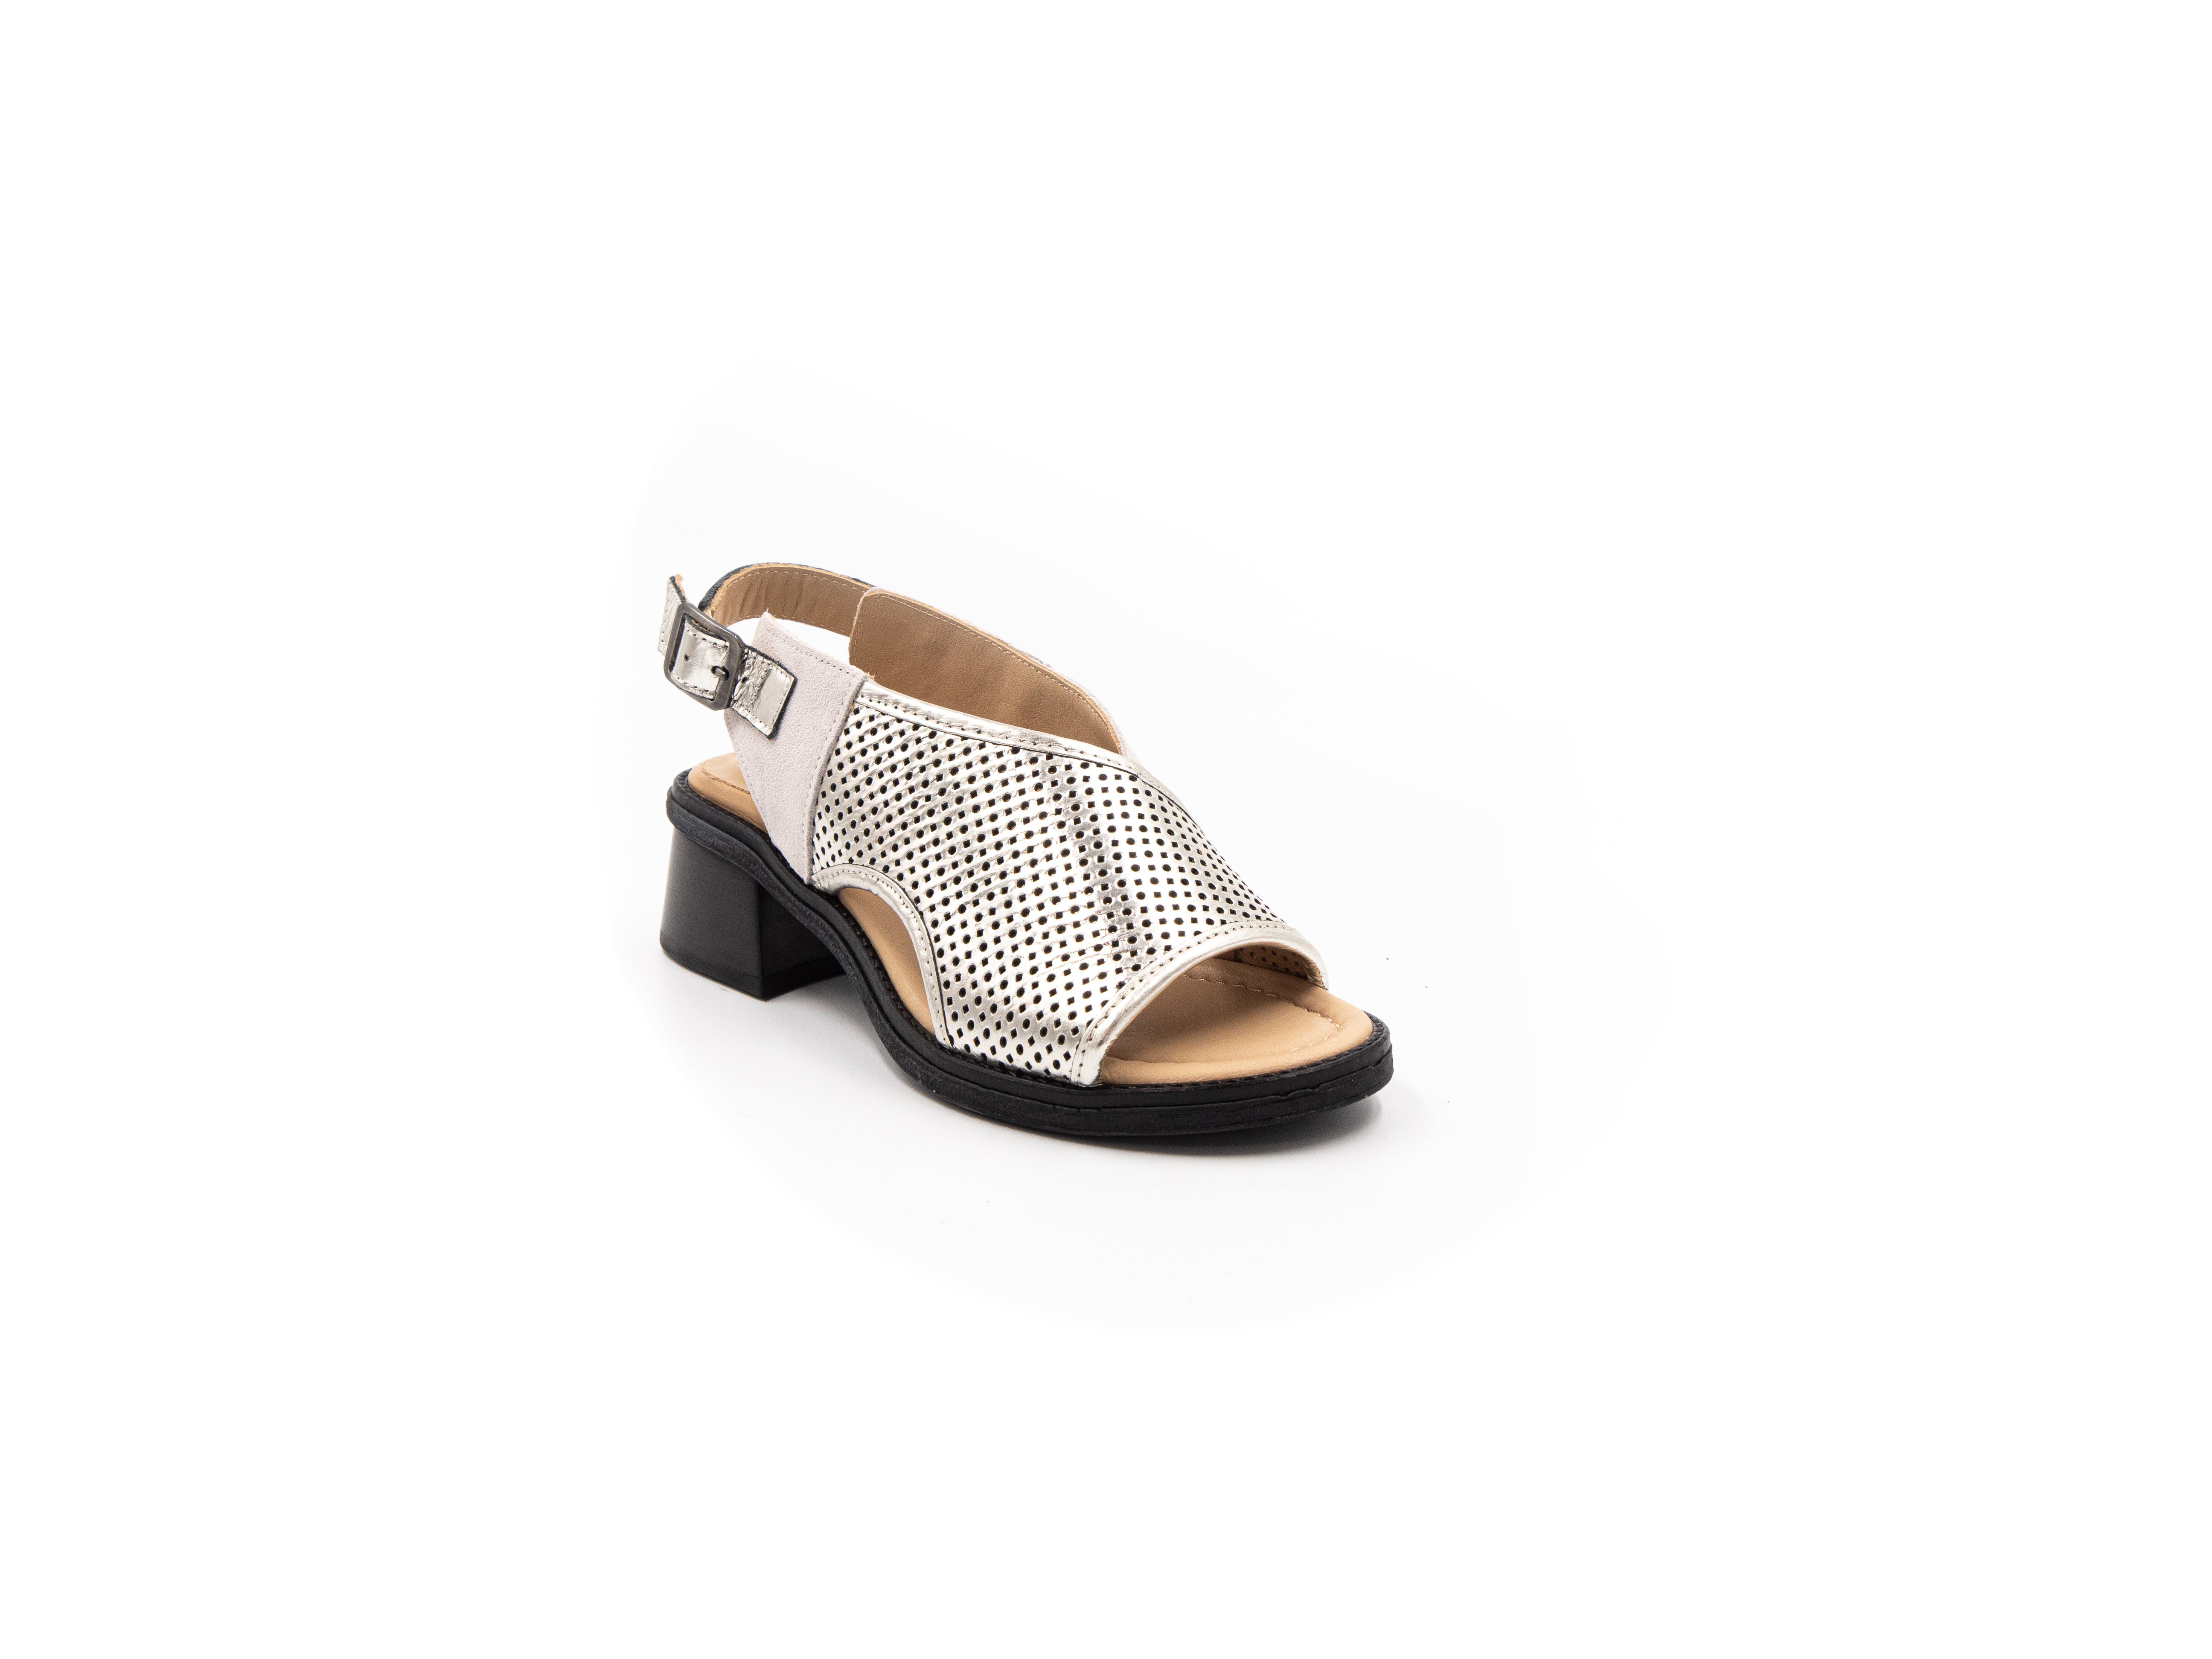 Sandals with small heels in beige tones.